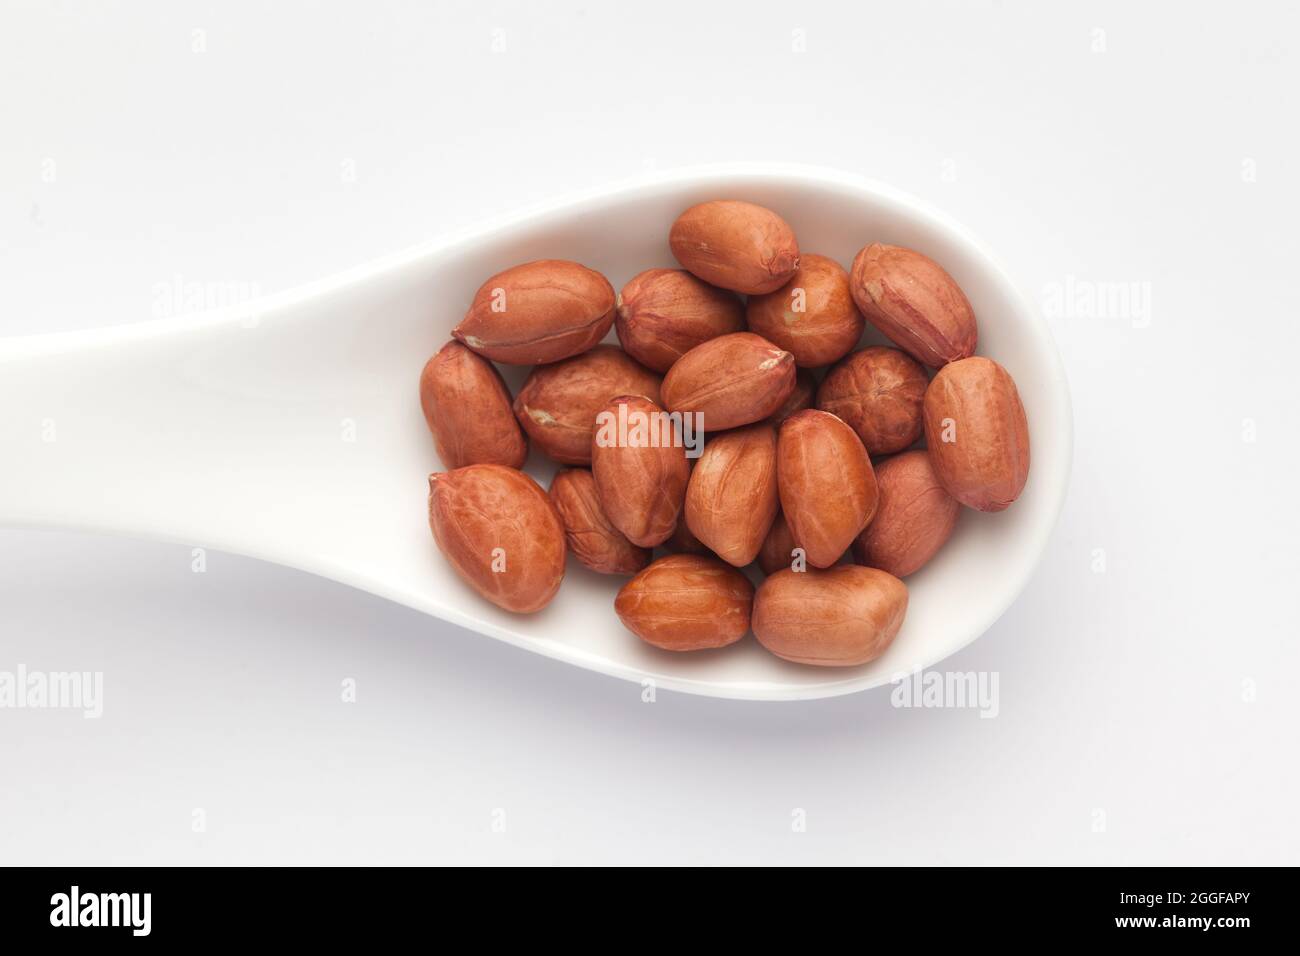 Makro Nahaufnahme von Bio-rot-braunen Erdnüssen (Arachis hypogaea) auf einem weißen keramischen Suppenlöffel. Draufsicht Stockfoto